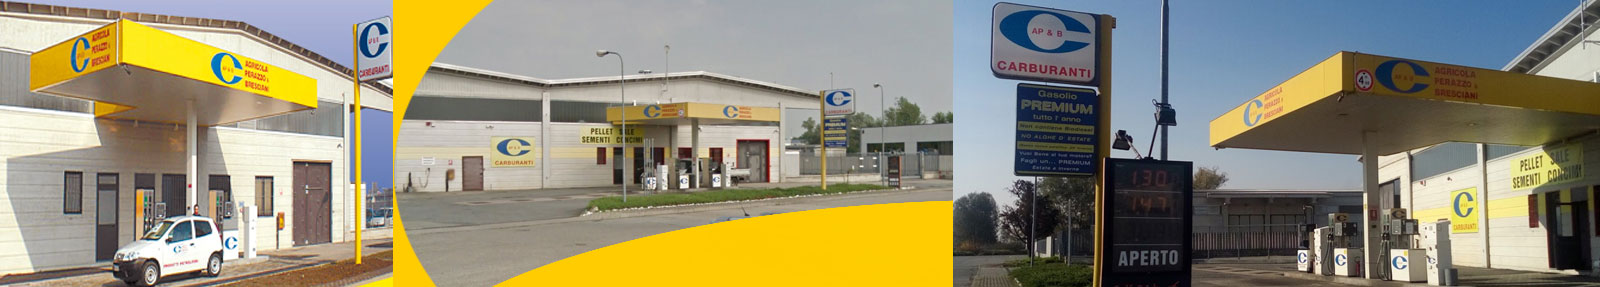 Impianto di distribuzione carburante a Vercelli con carburanti agricoli a prezzi vantaggiosi per partita Iva